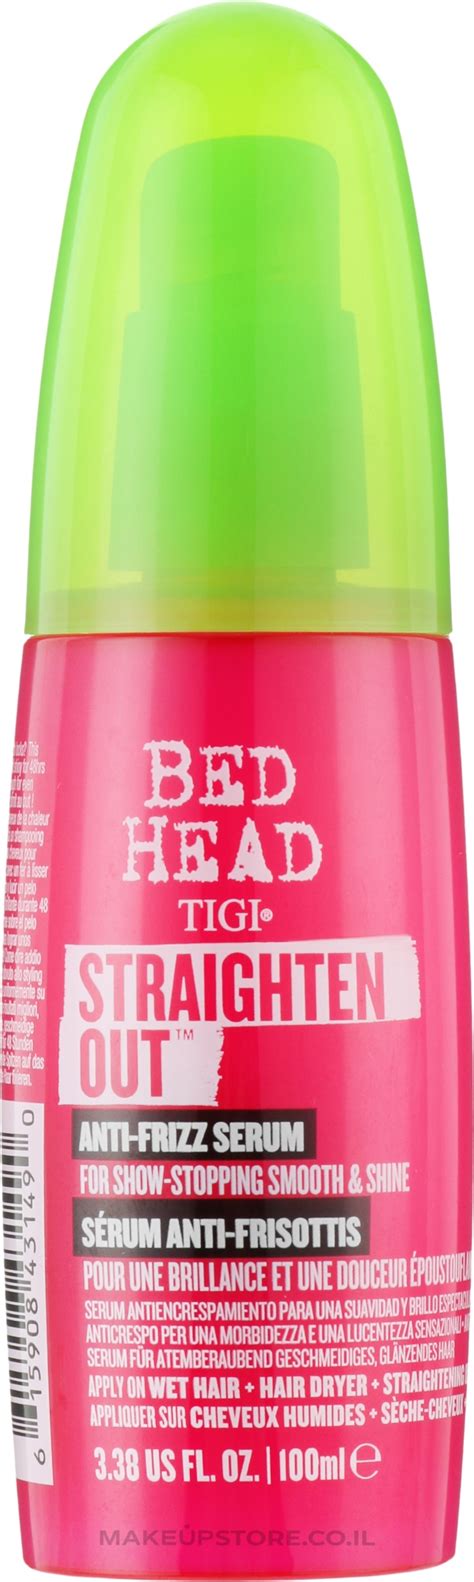 Tigi Bed Head Straighten Out Anti Frizz Serum Hair Straightening